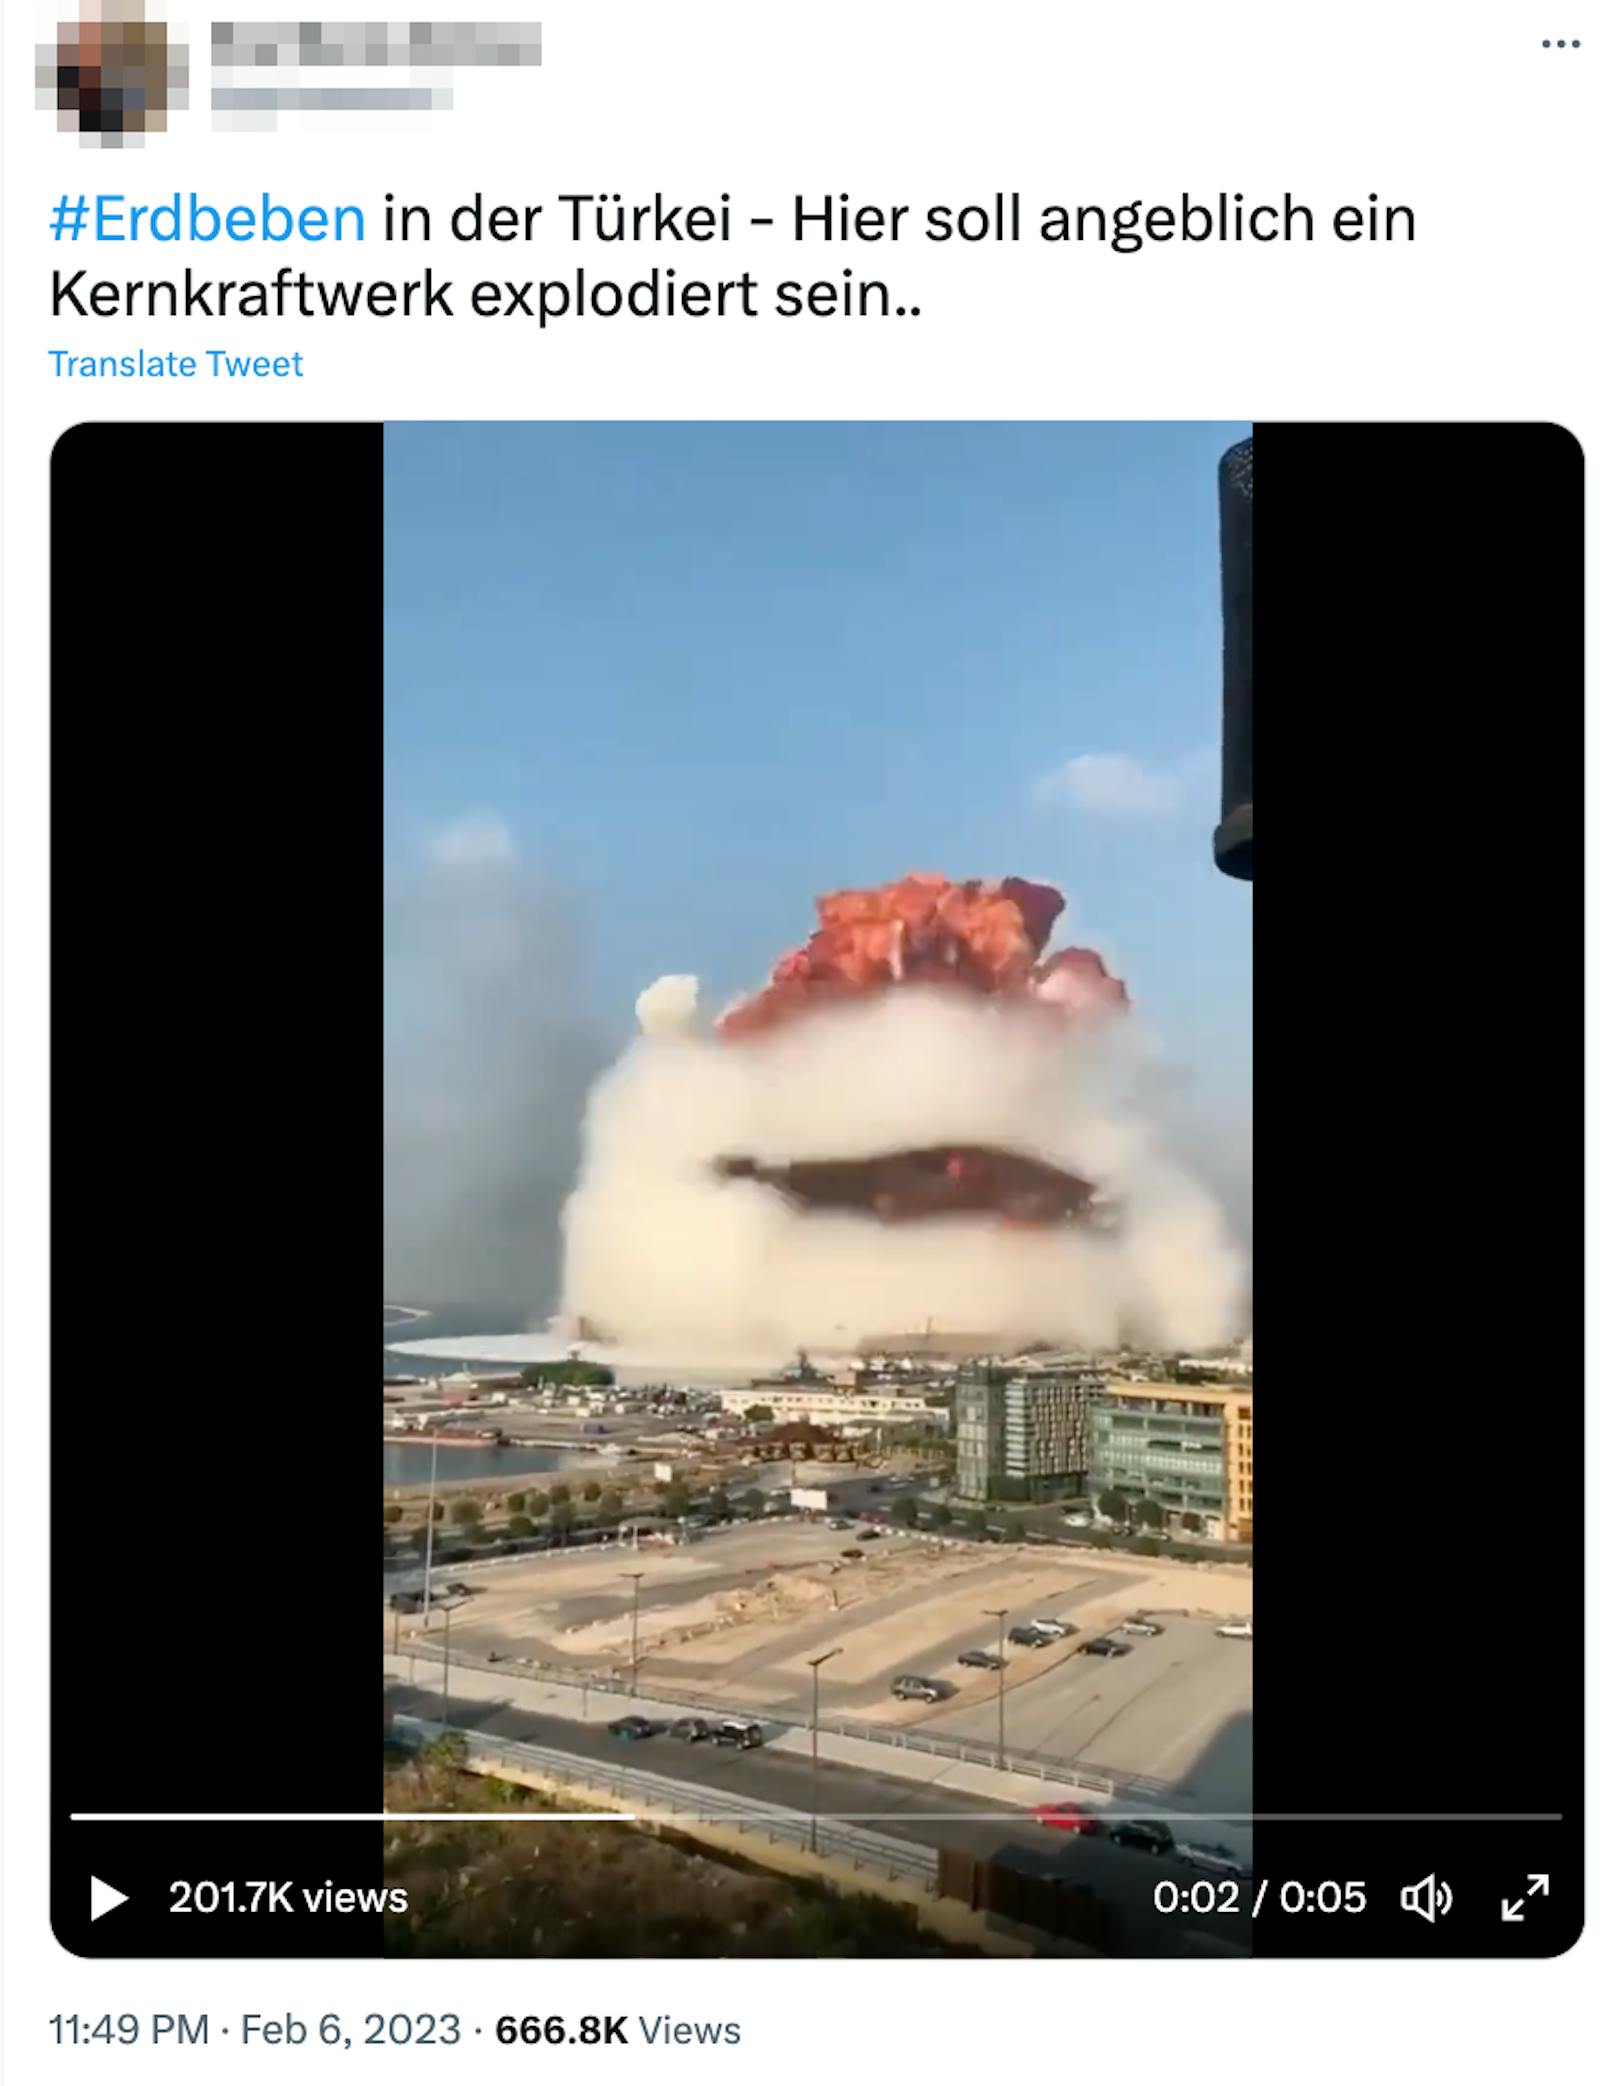 Die Explosion in diesem unter anderem auf Twitter verbreiteten Video hat es tatsächlich gegeben – allerdings hat sie sich bereits im Jahr 2020 ereignet – in der libanesischen Stadt Beirut.